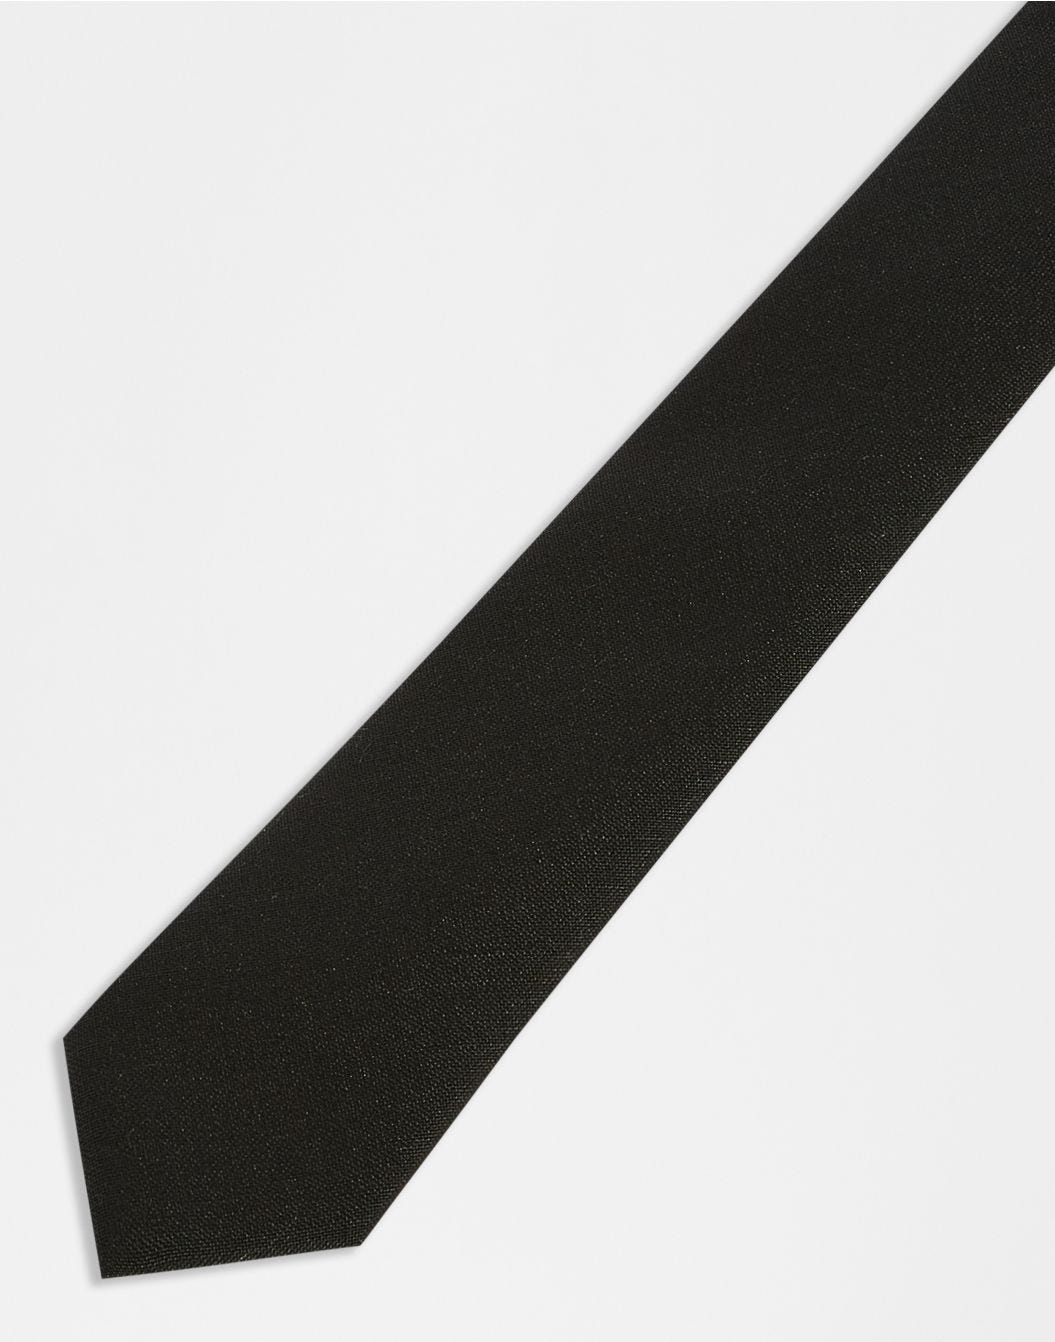 Cravate en laine mohair noire